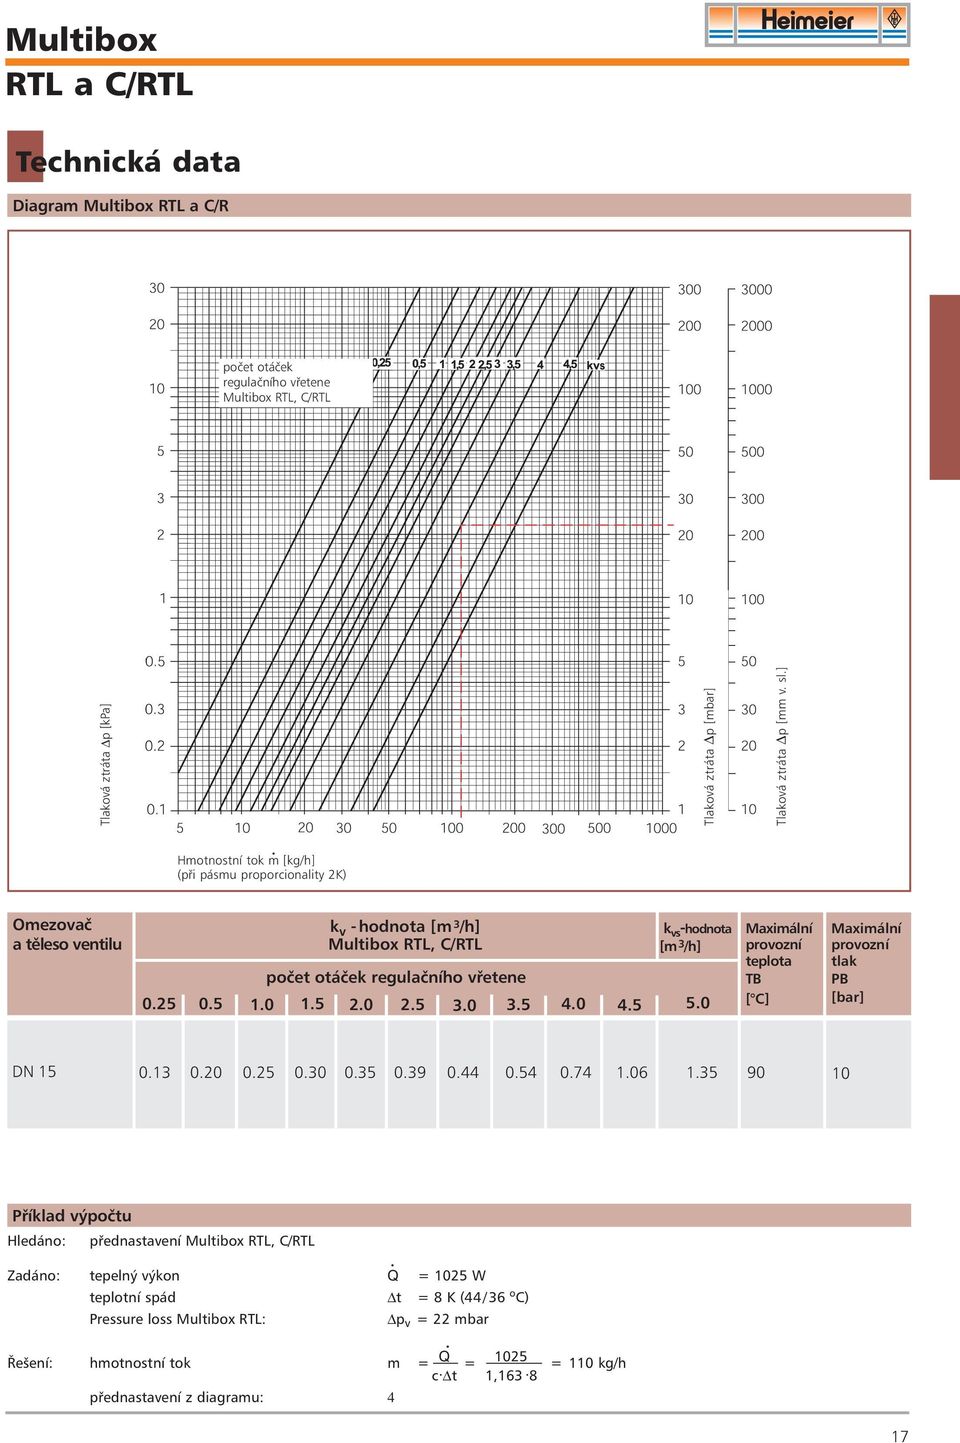 0 2.5 3.0 3.5 4.0 4.5 5.0 Maximální provozní teplota TB [ C] Maximální provozní tlak PB [bar] DN 15 0.13 0.20 0.25 0.30 0.35 0.39 0.44 0.54 0.74 1.0 1.